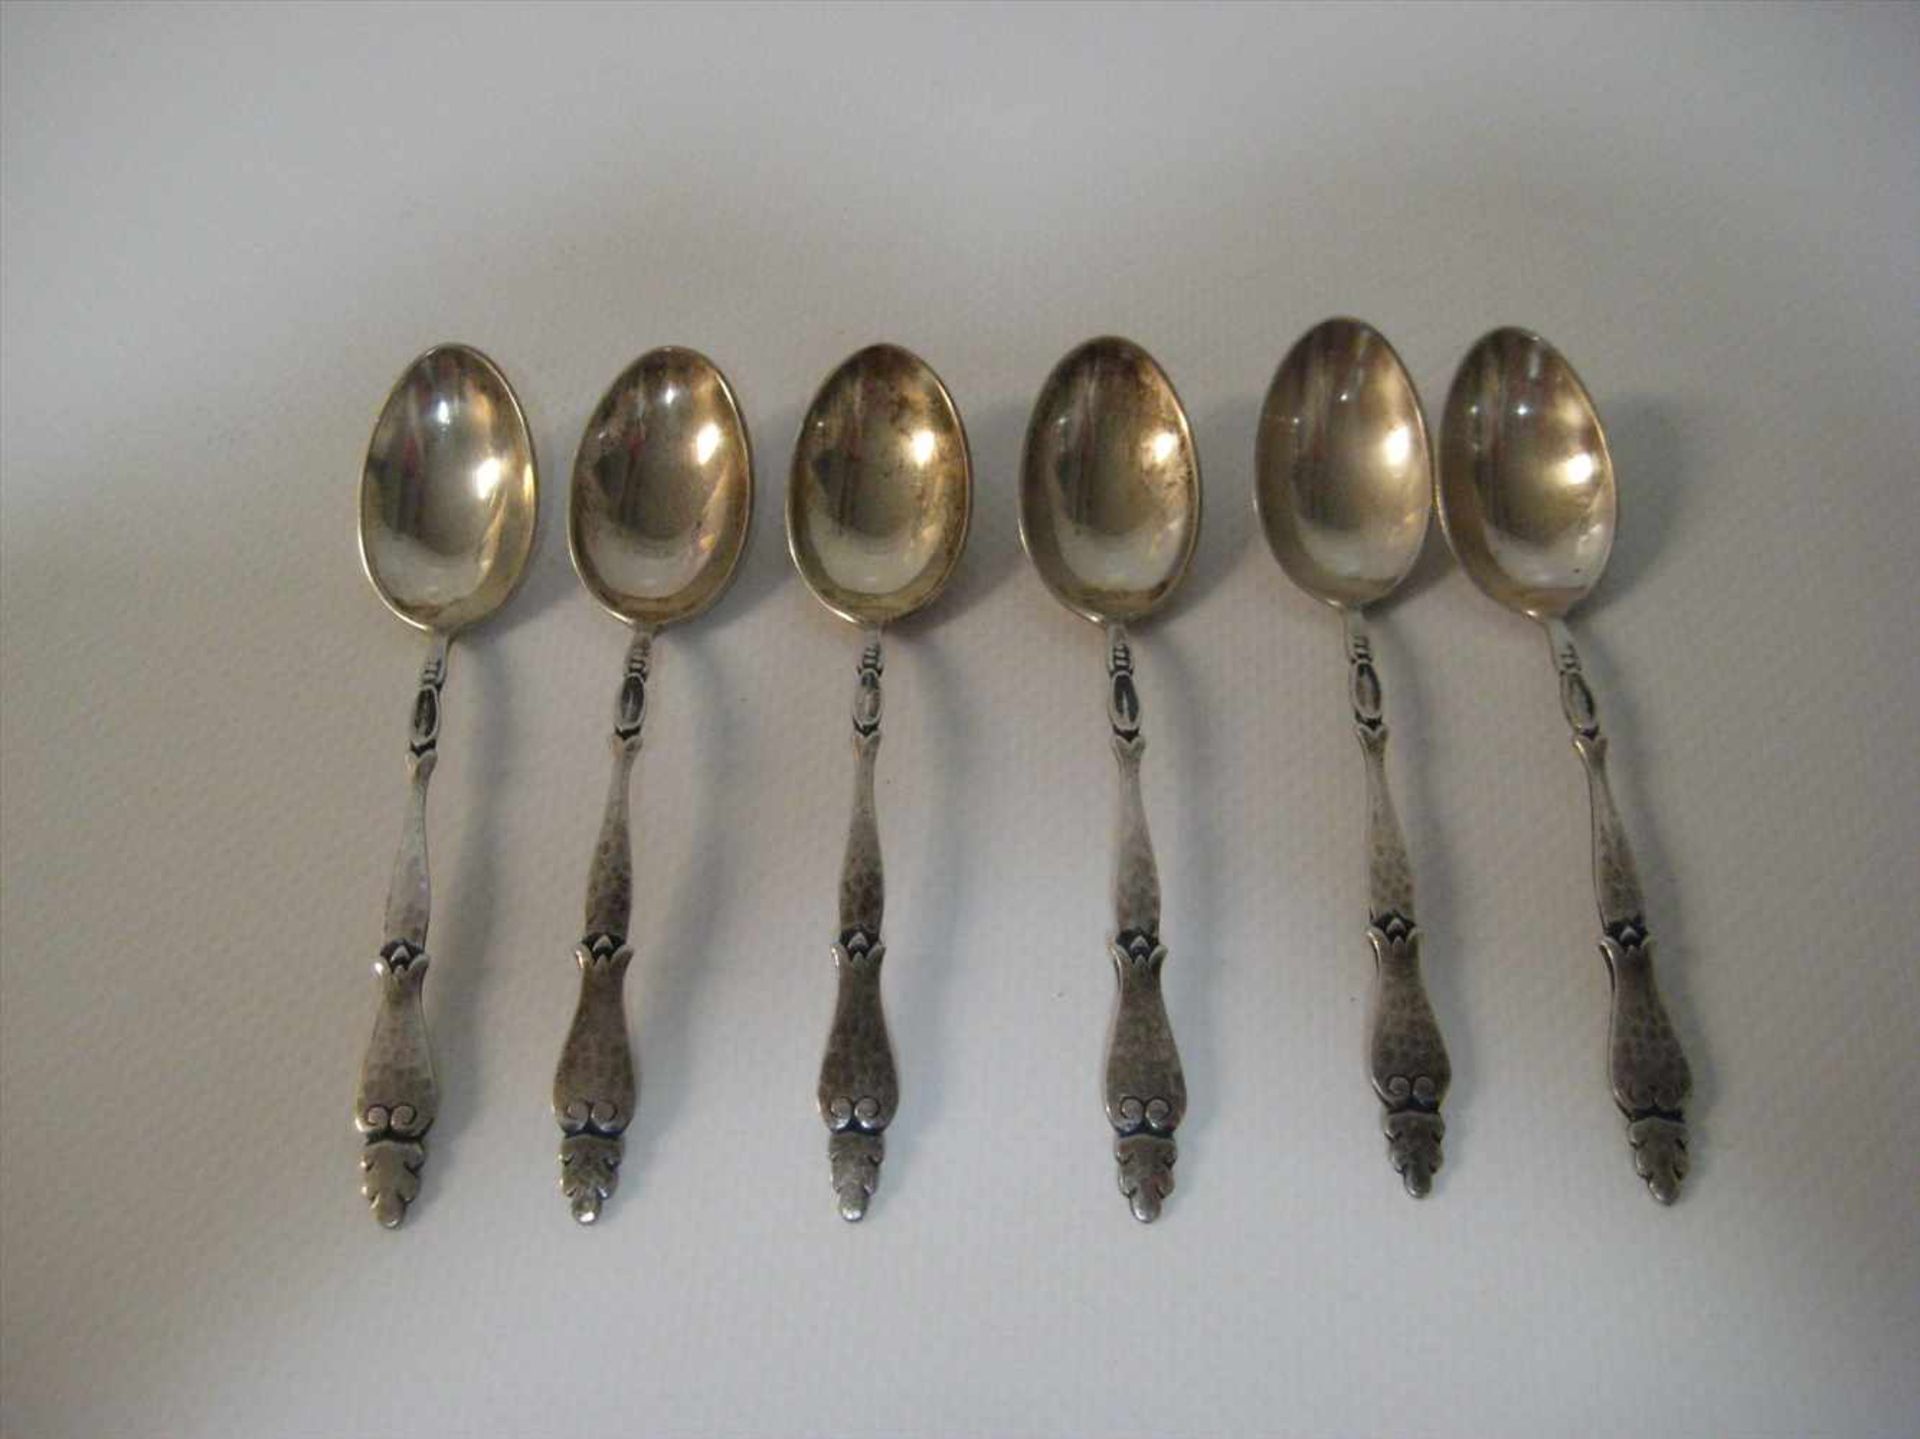 6 Jugendstil Teelöffel, Wilkens, um 1900, 800er Silber, gepunzt, 46,8 g, l 9,7 cm.